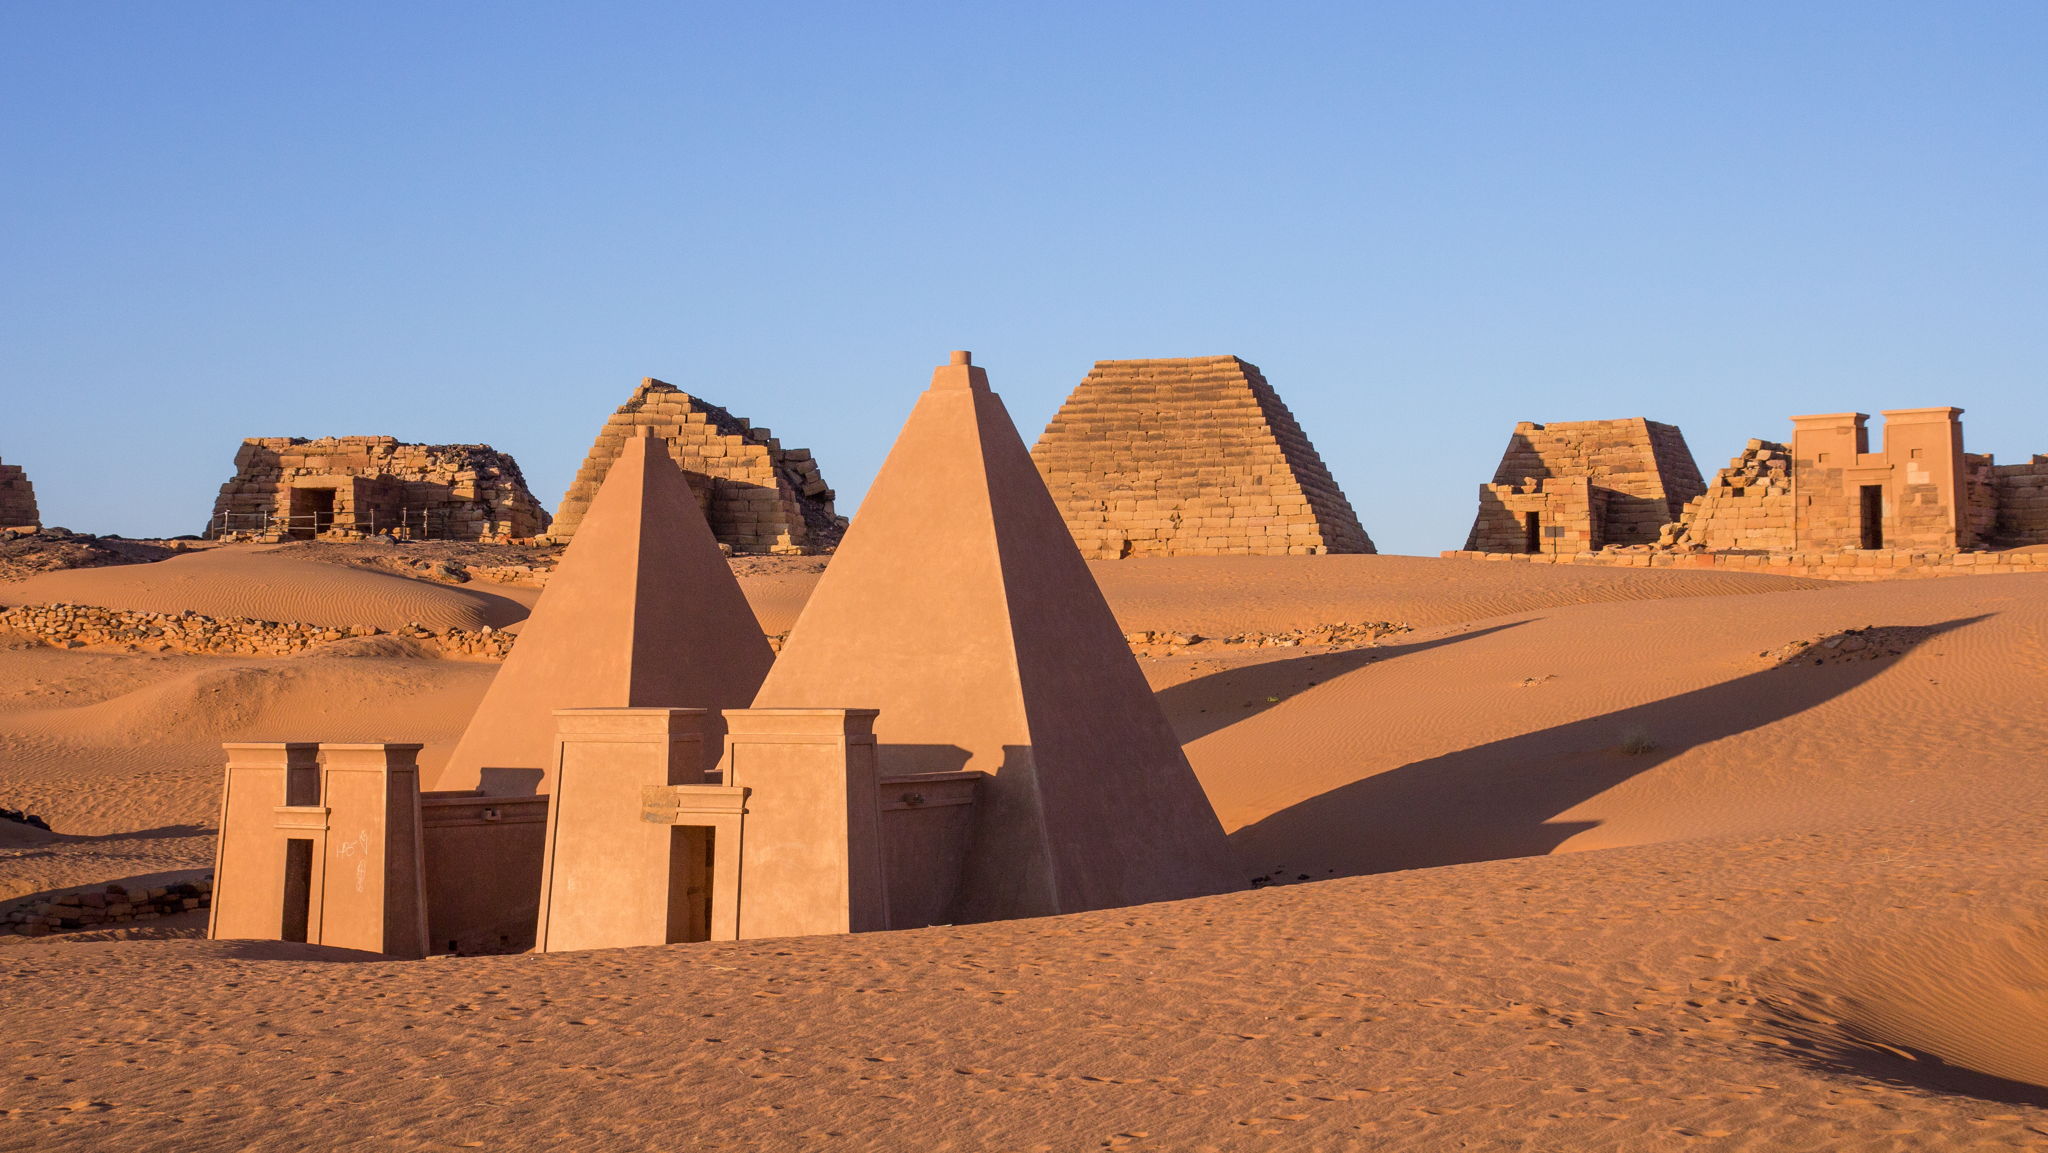 Pyramids of Sudan